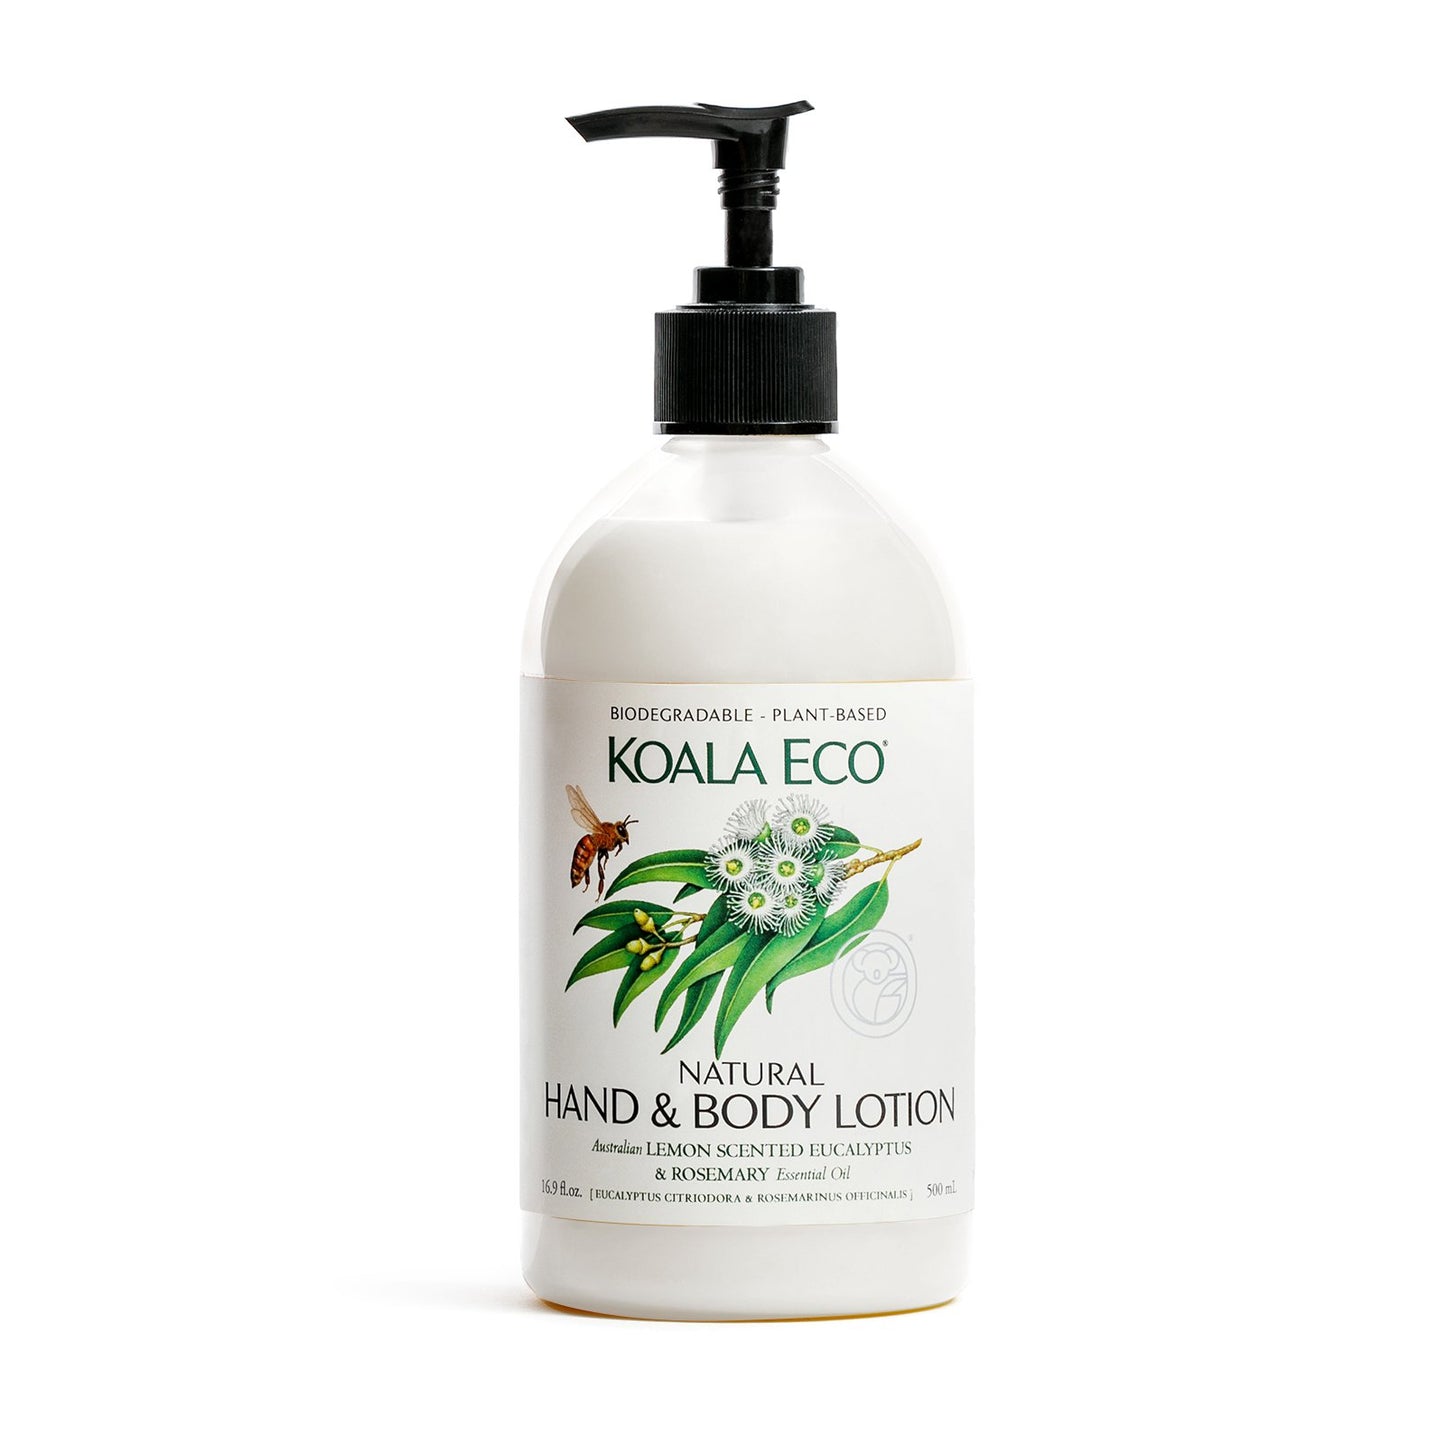 Natural Hand and Body Lotion - Lemon Scented Eucalyptus & Rosemary - Koala Eco - Australian Made